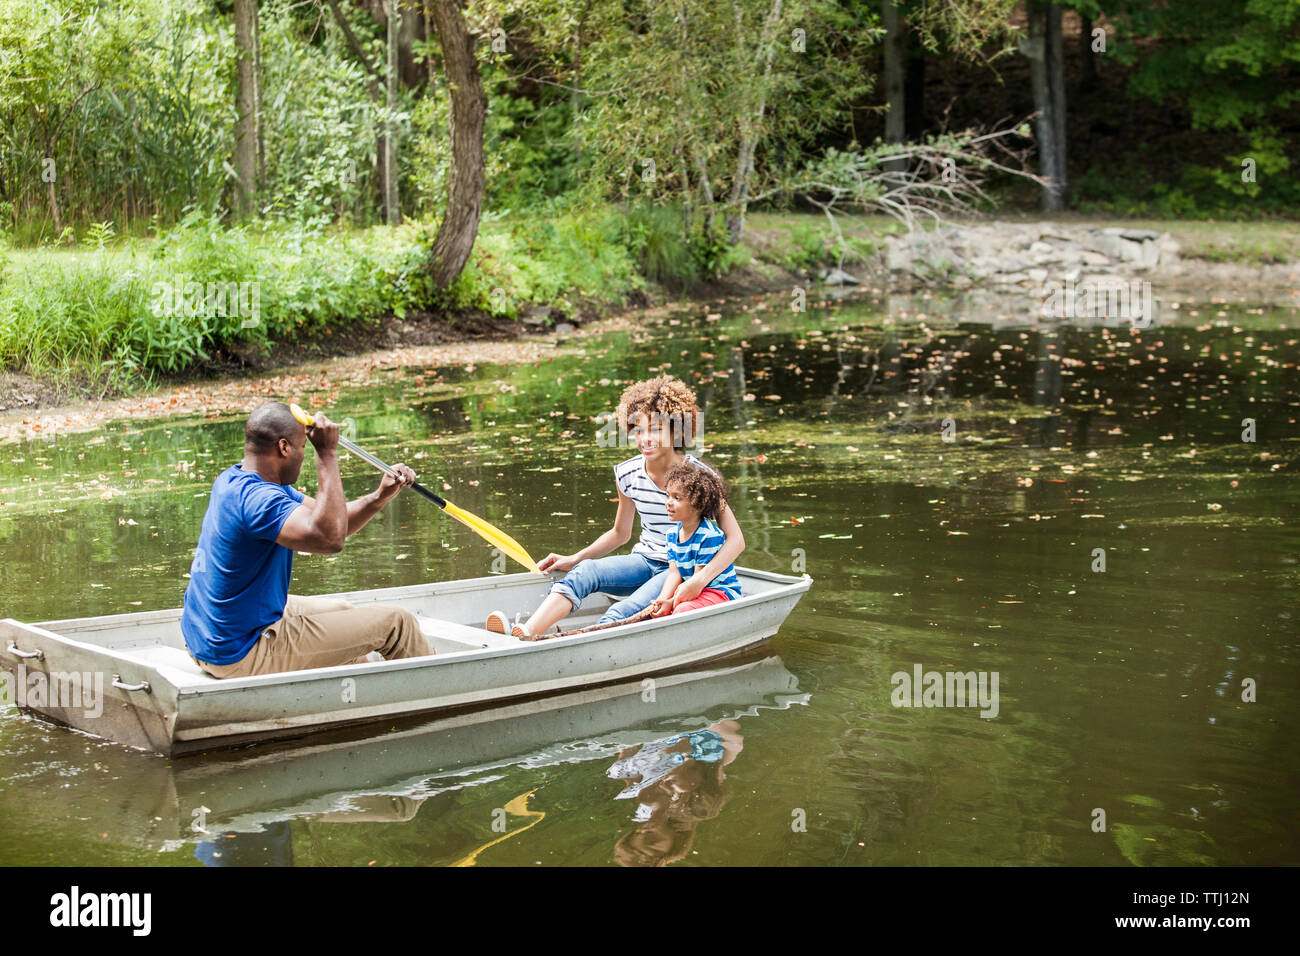 Happy family boating in lake Stock Photo